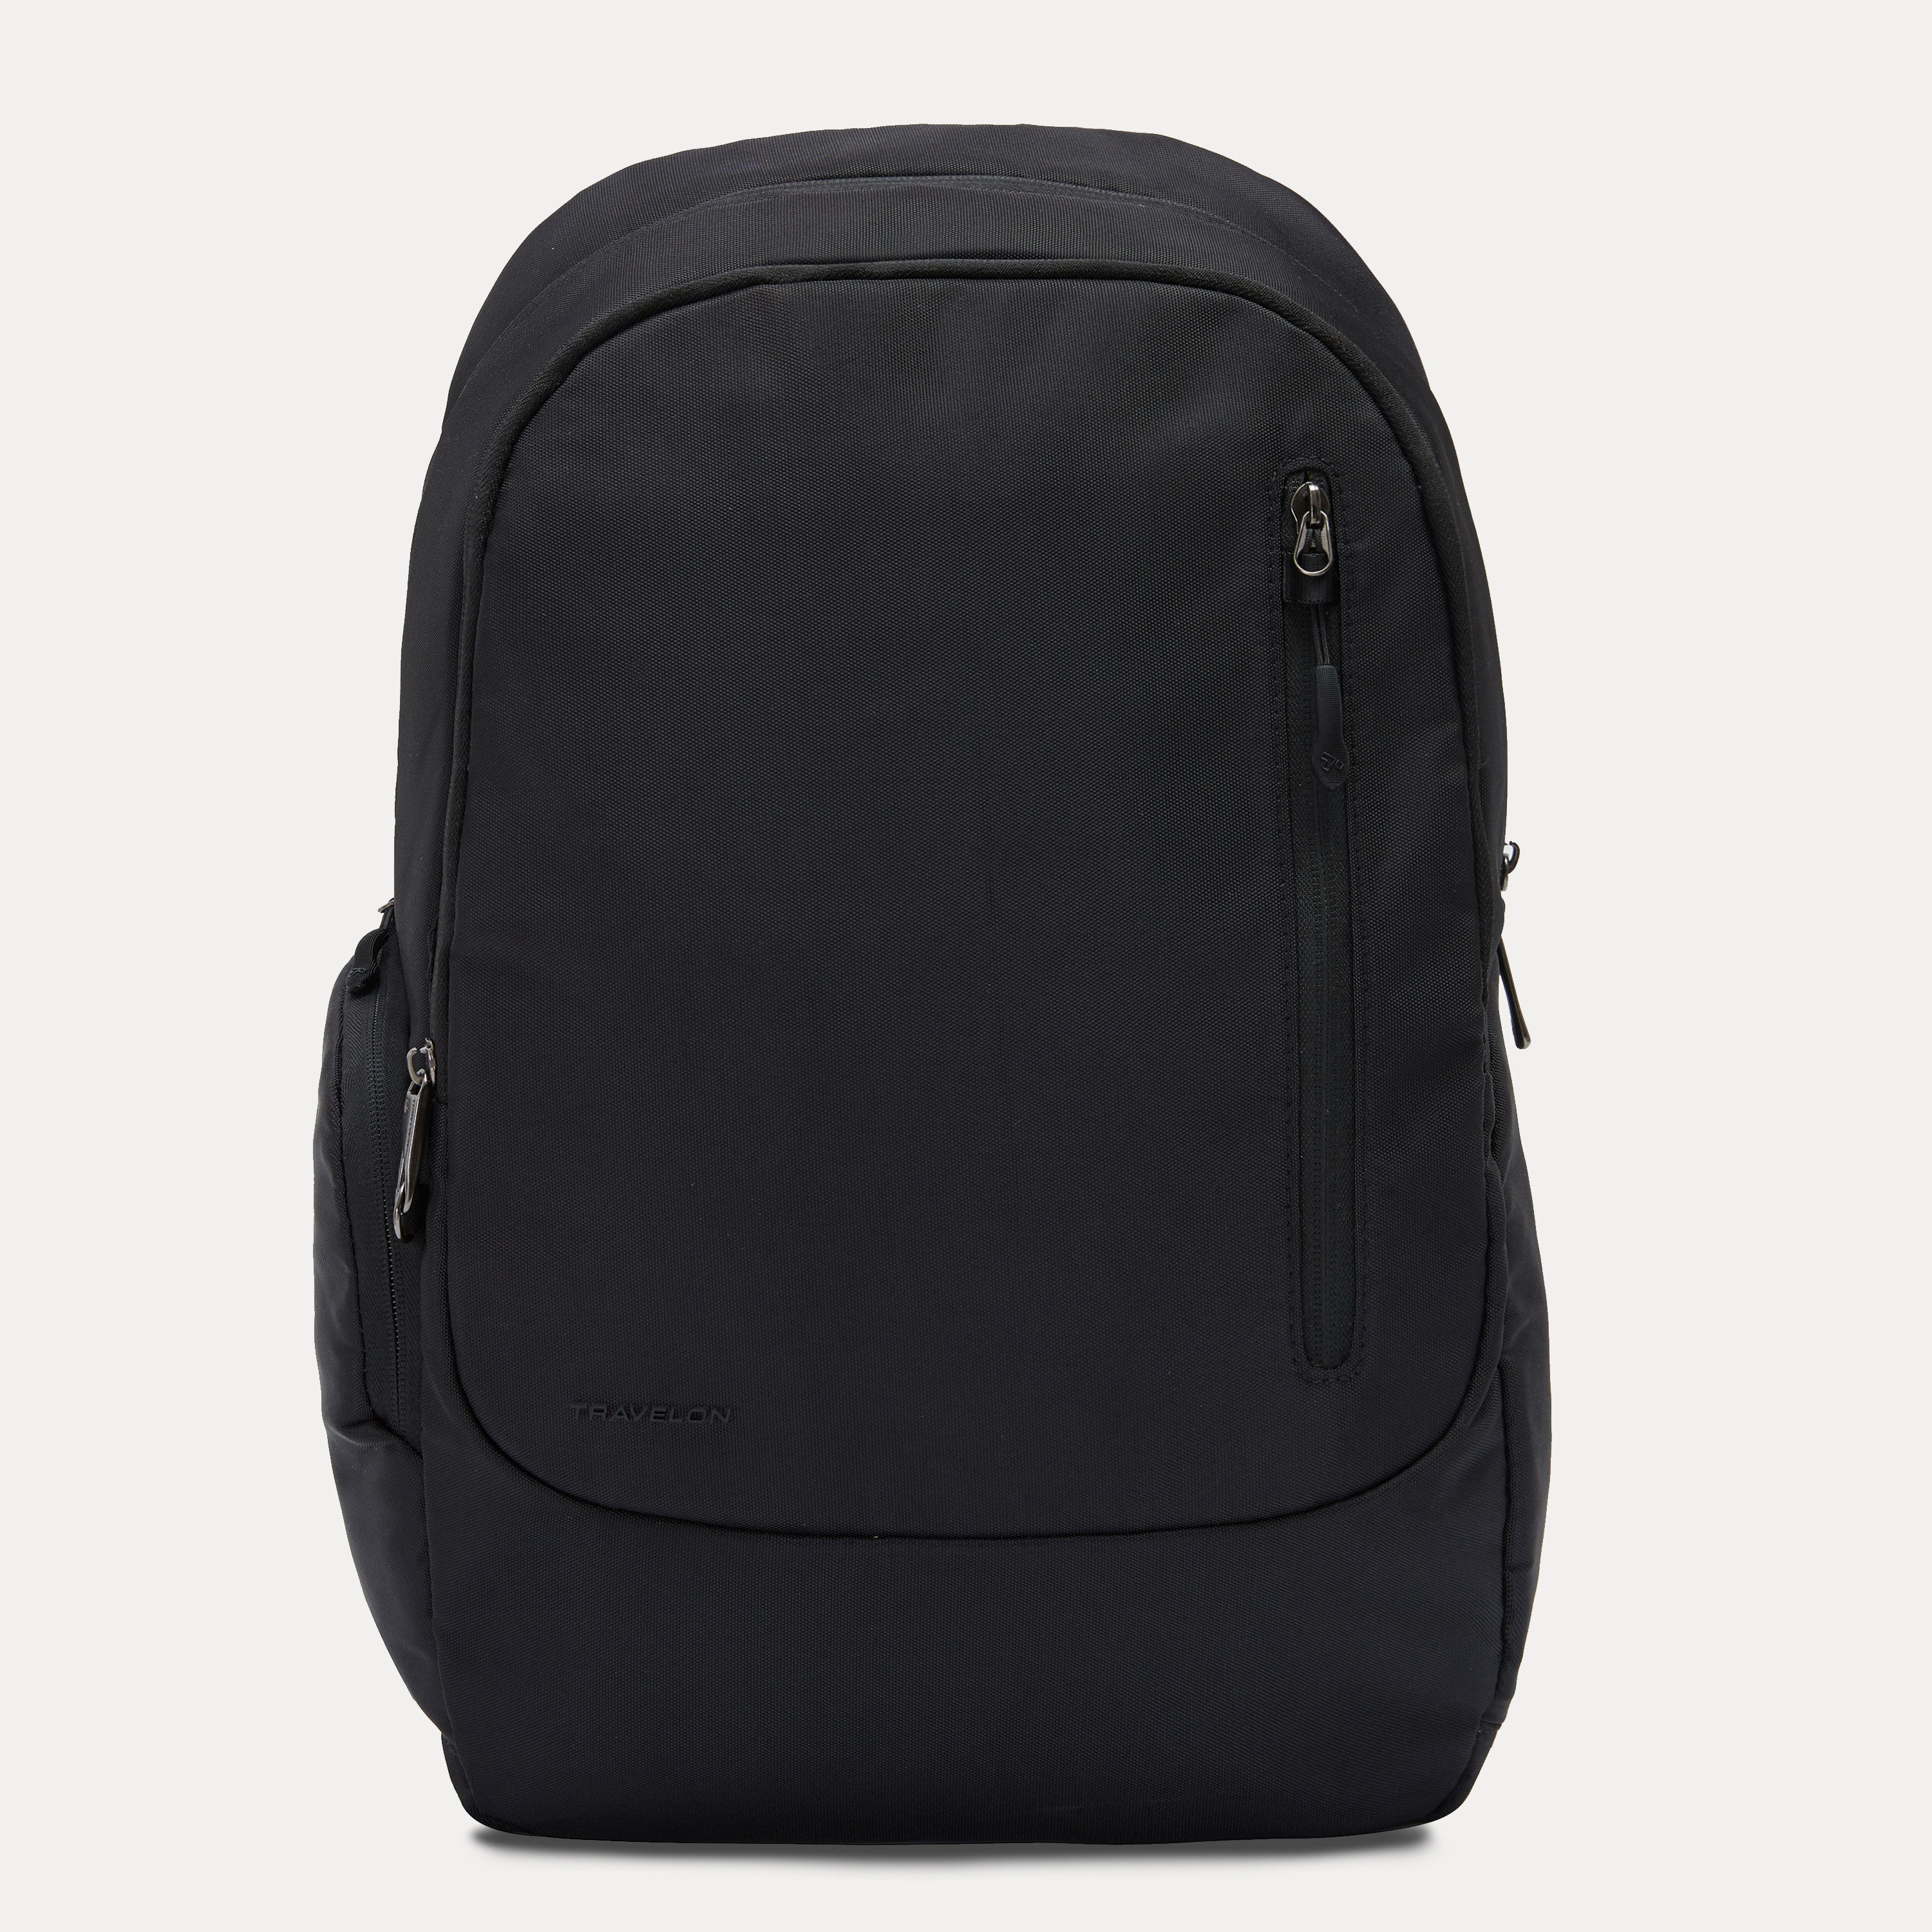 Urban Tribe Bag Laptop Bags & Messenger Bags